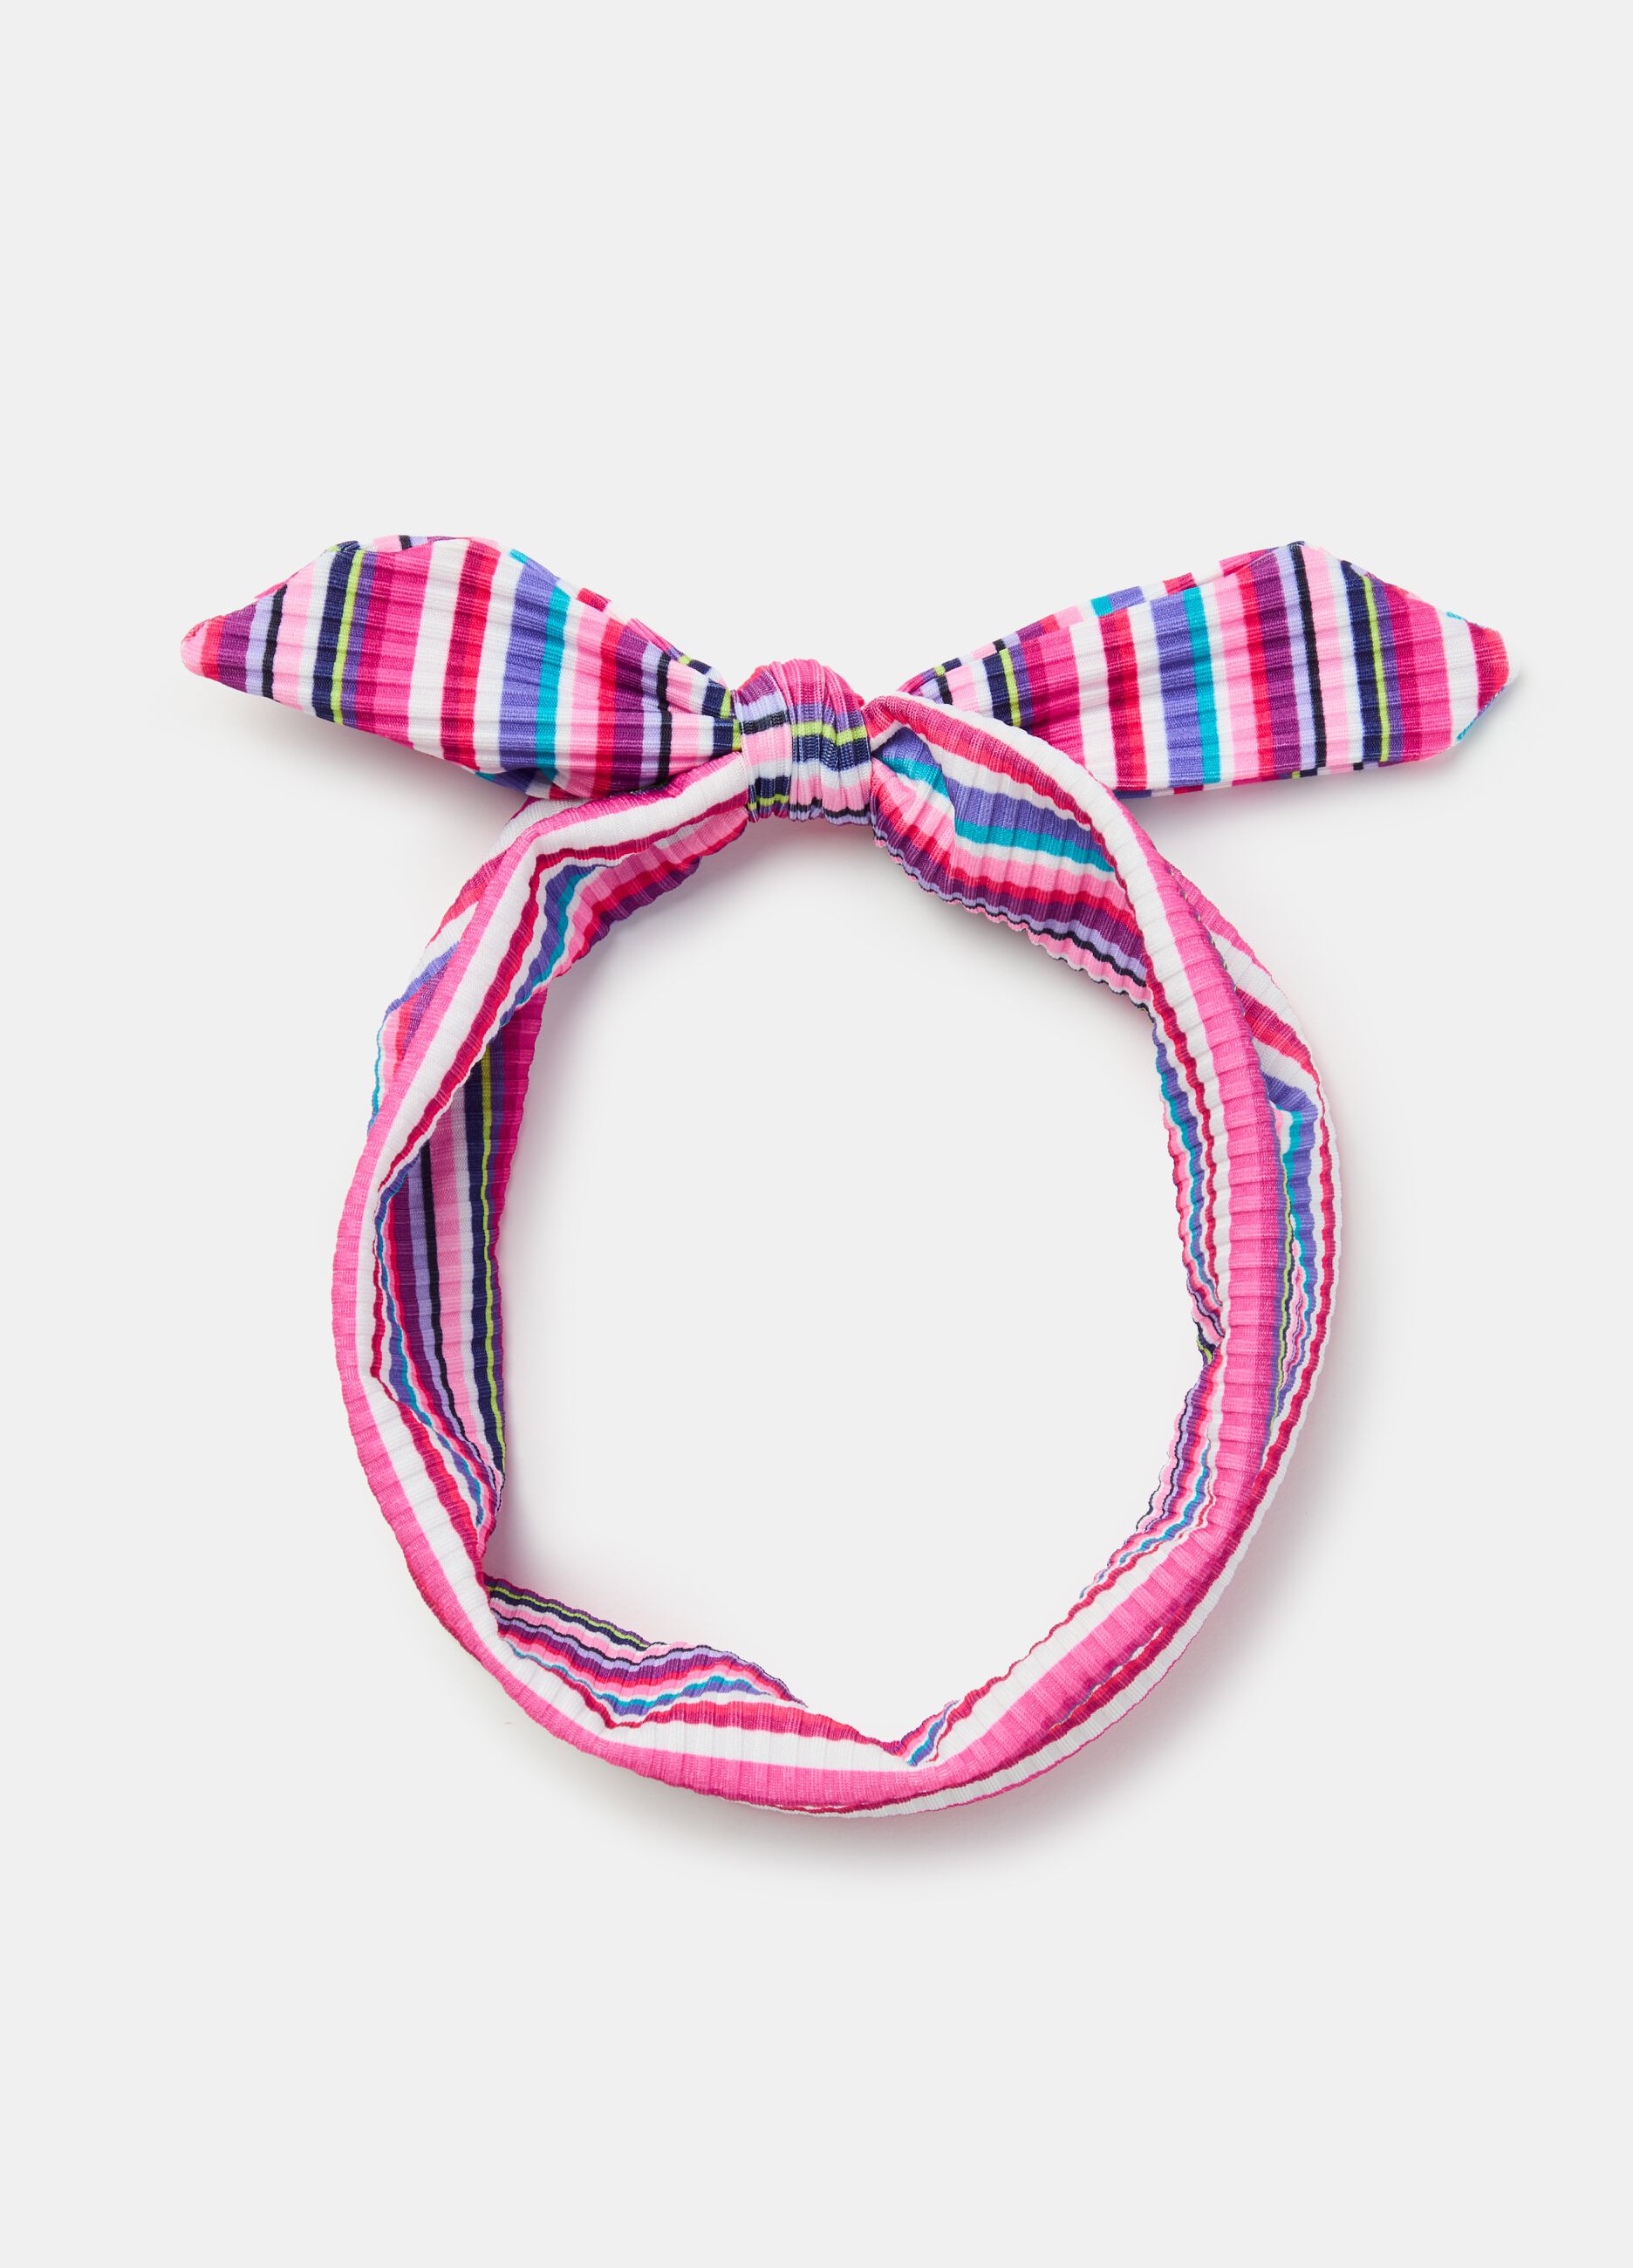 Ribbed headband with knot